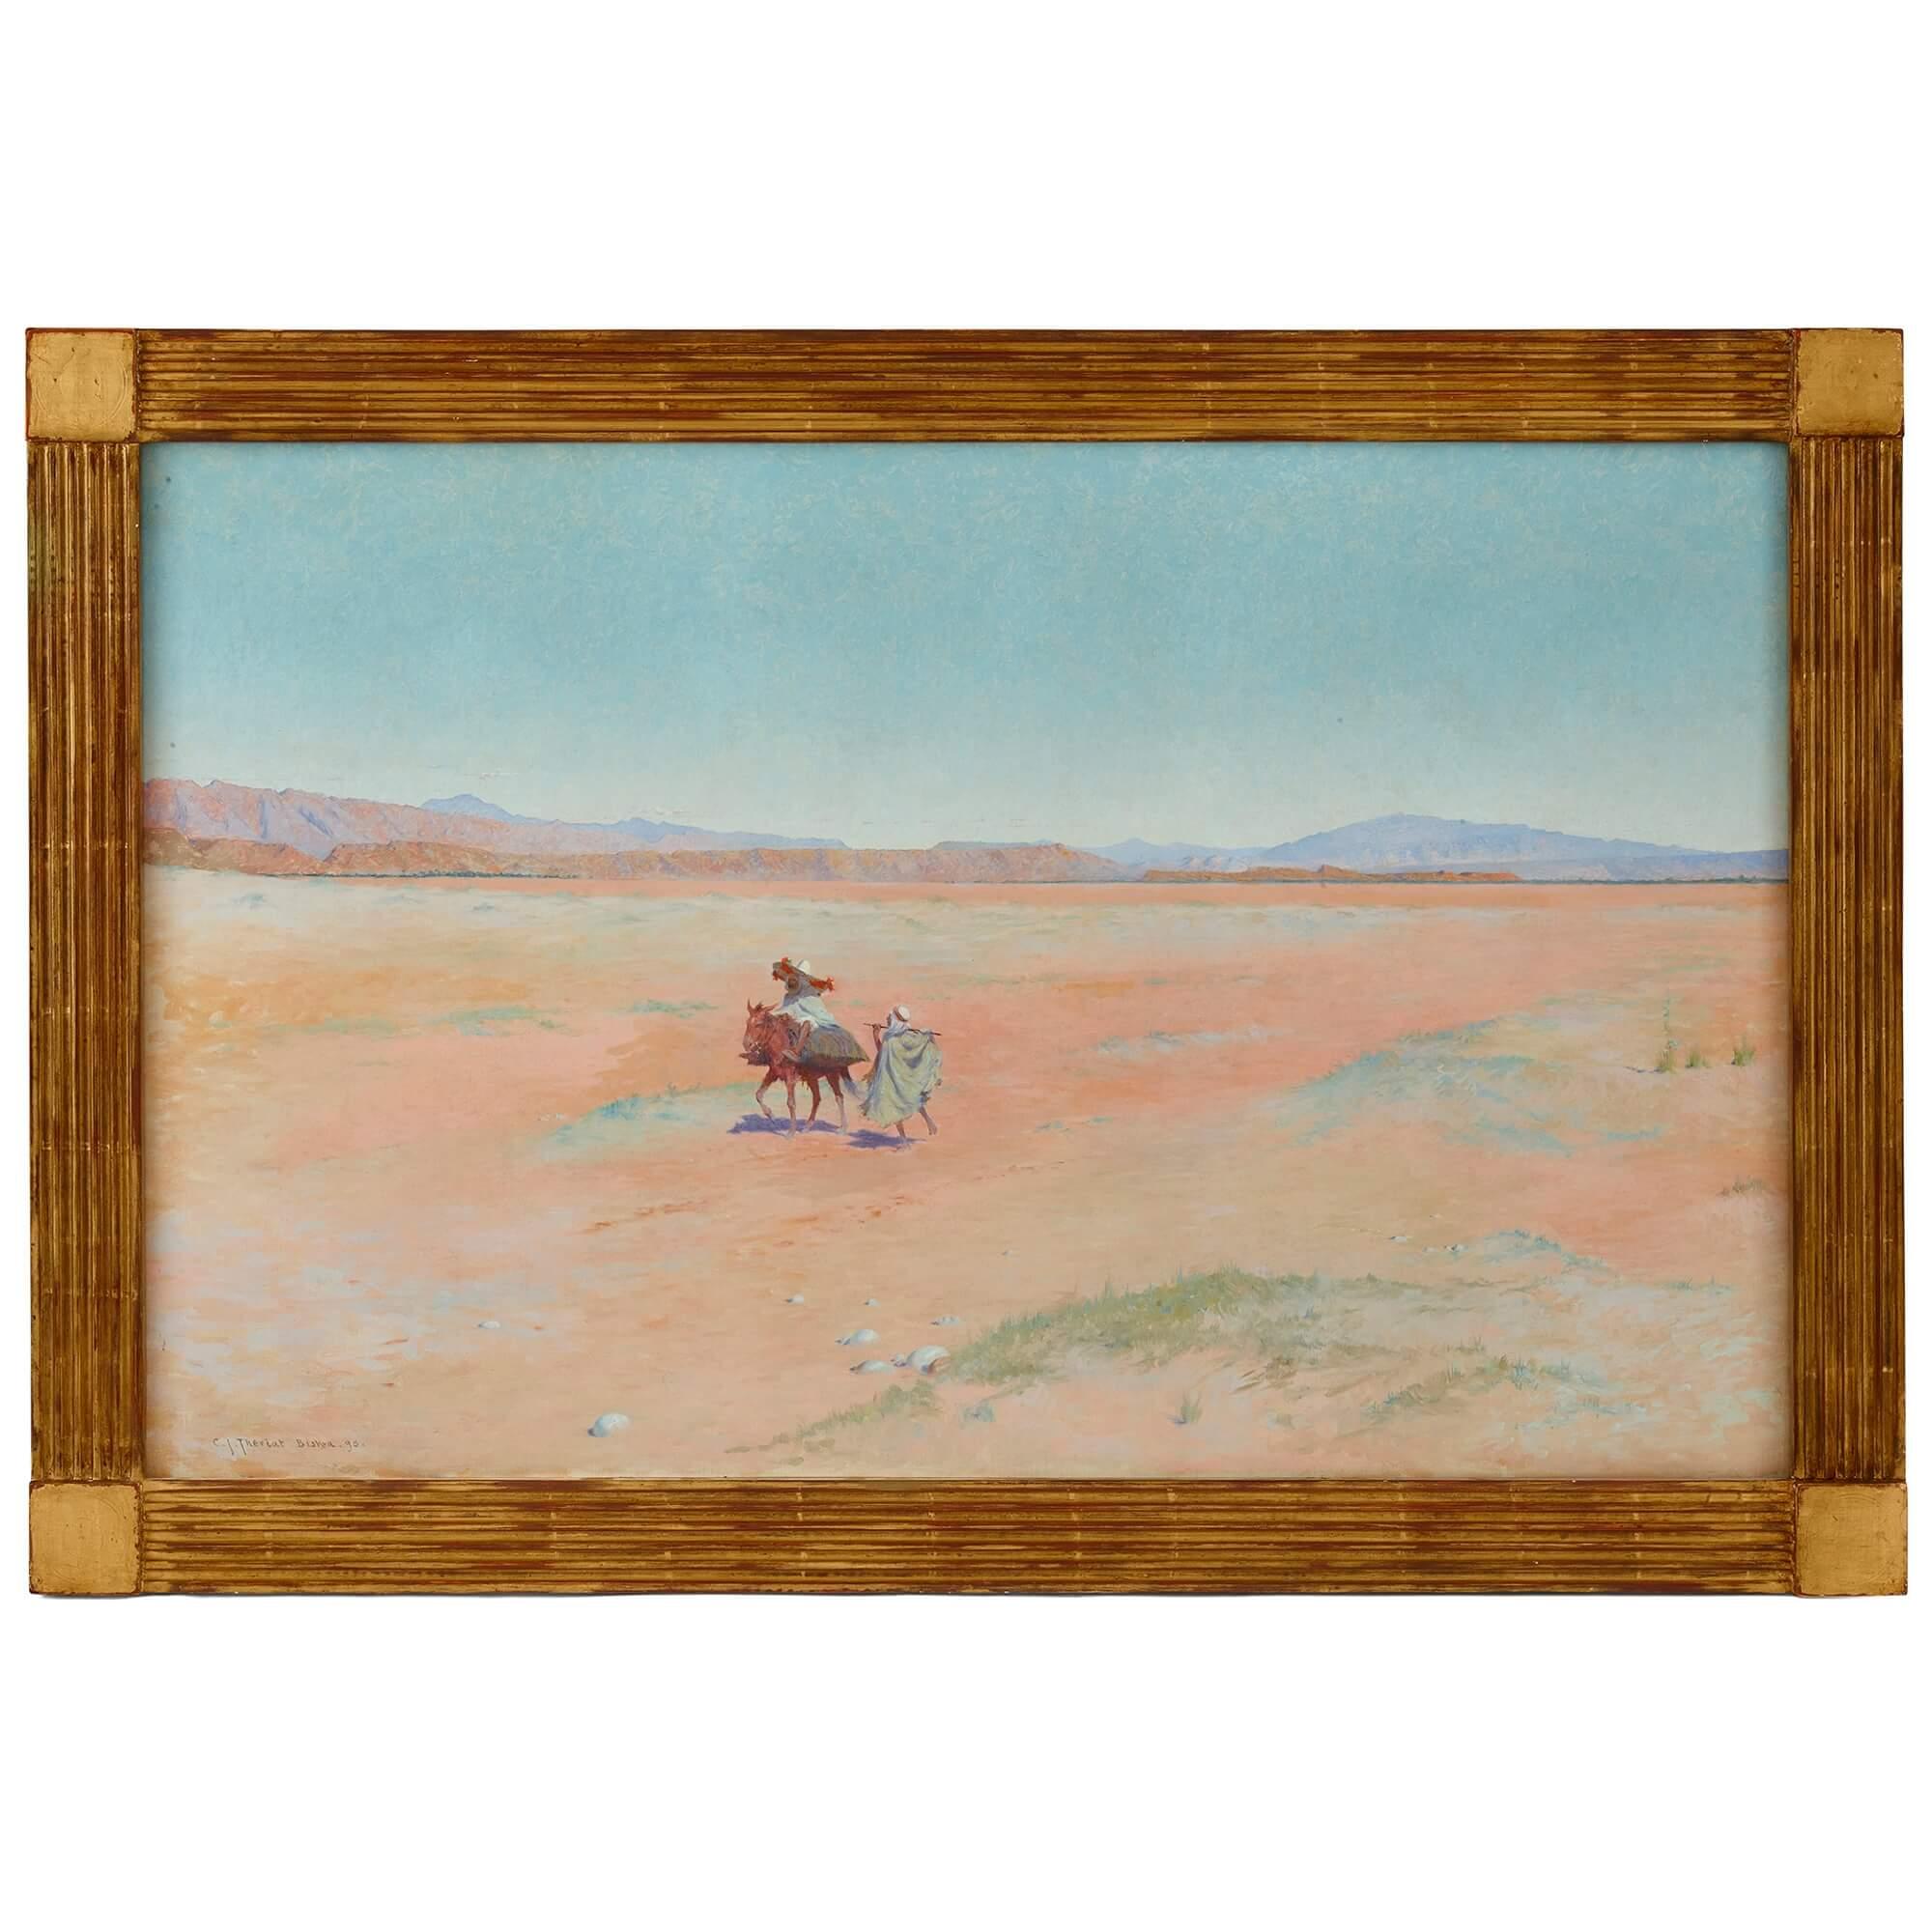 Landscape Painting Charles James Theriat - « Travellers in the Desert » ( Travellers dans le désert), une grande peinture orientaliste de C. J. Theriat